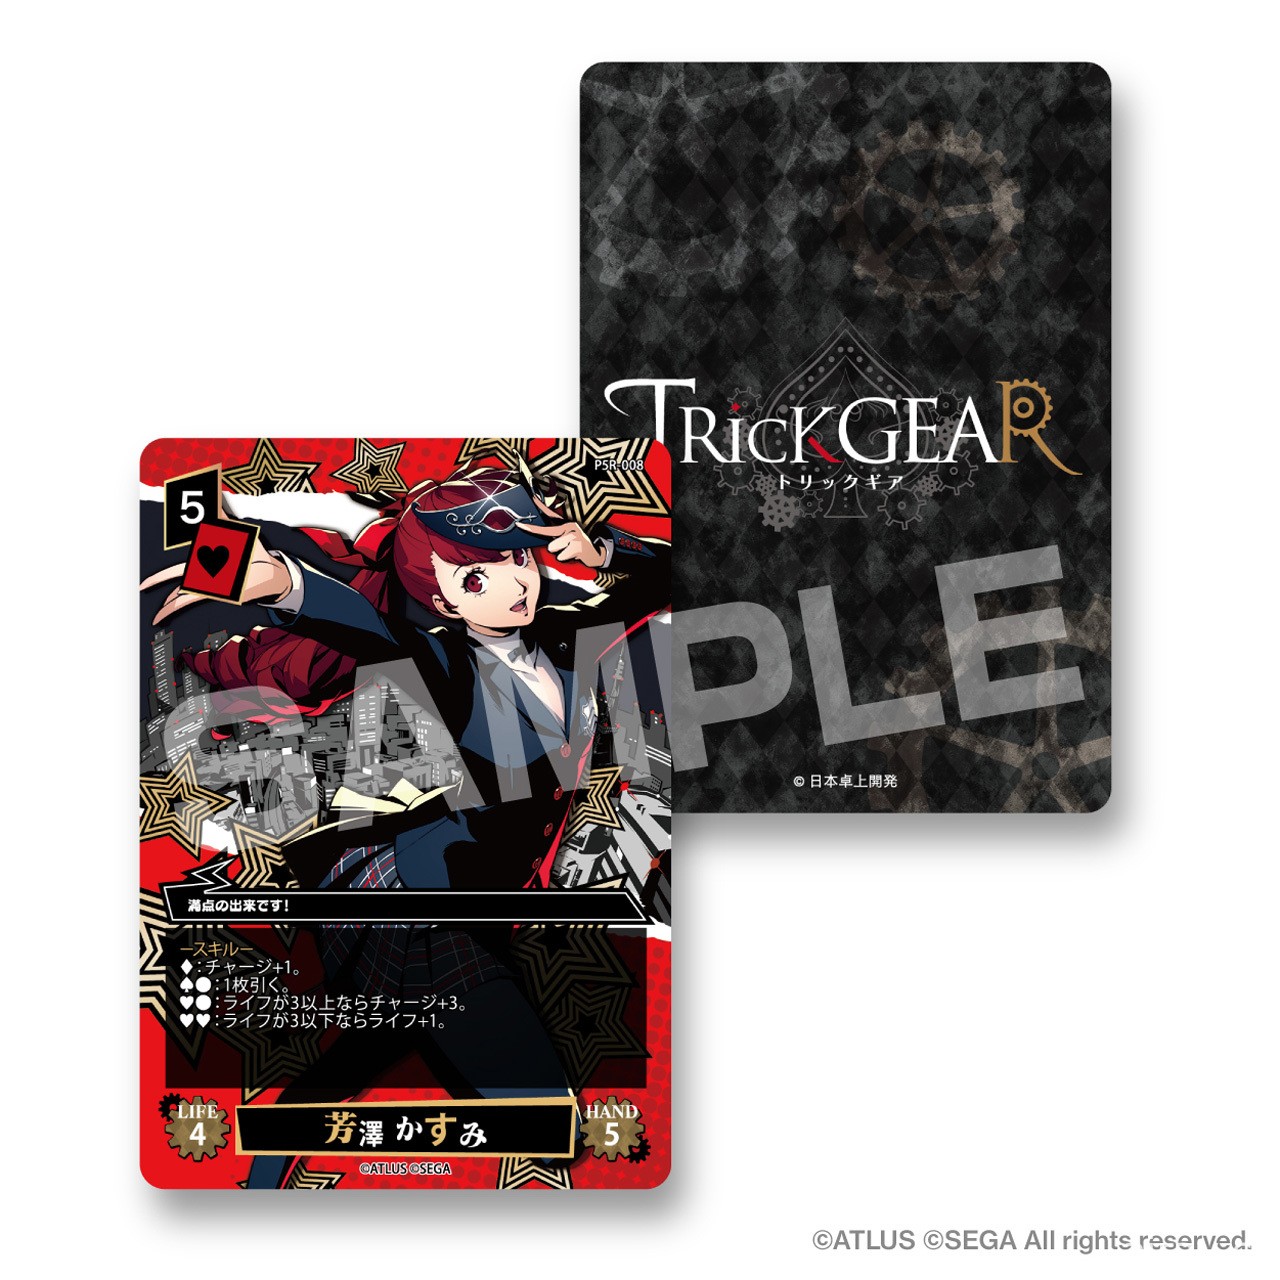 《女神異聞錄 5 皇家版》改編桌上遊戲《TRicK GEAR》11 月推出 搭配撲克牌簡單上手